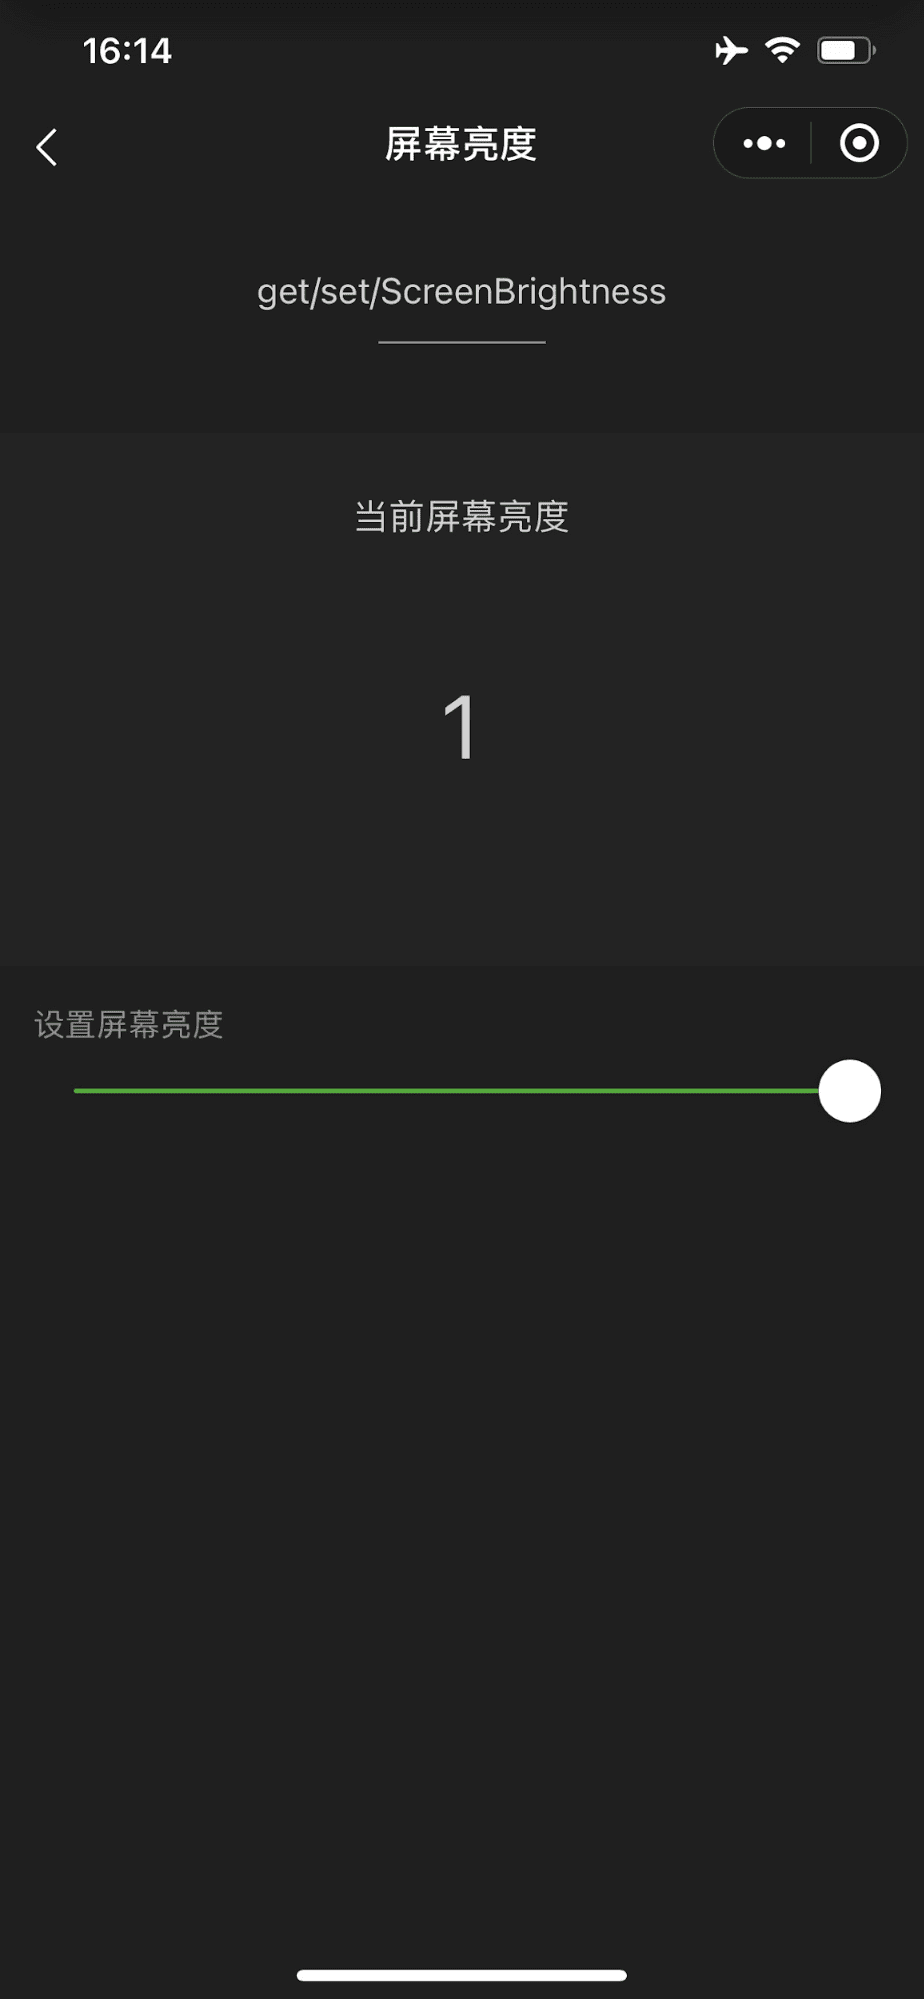 La mini app demo di WeChat mostra un dispositivo di scorrimento che controlla la luminosità dello schermo del dispositivo spostato completamente al massimo.